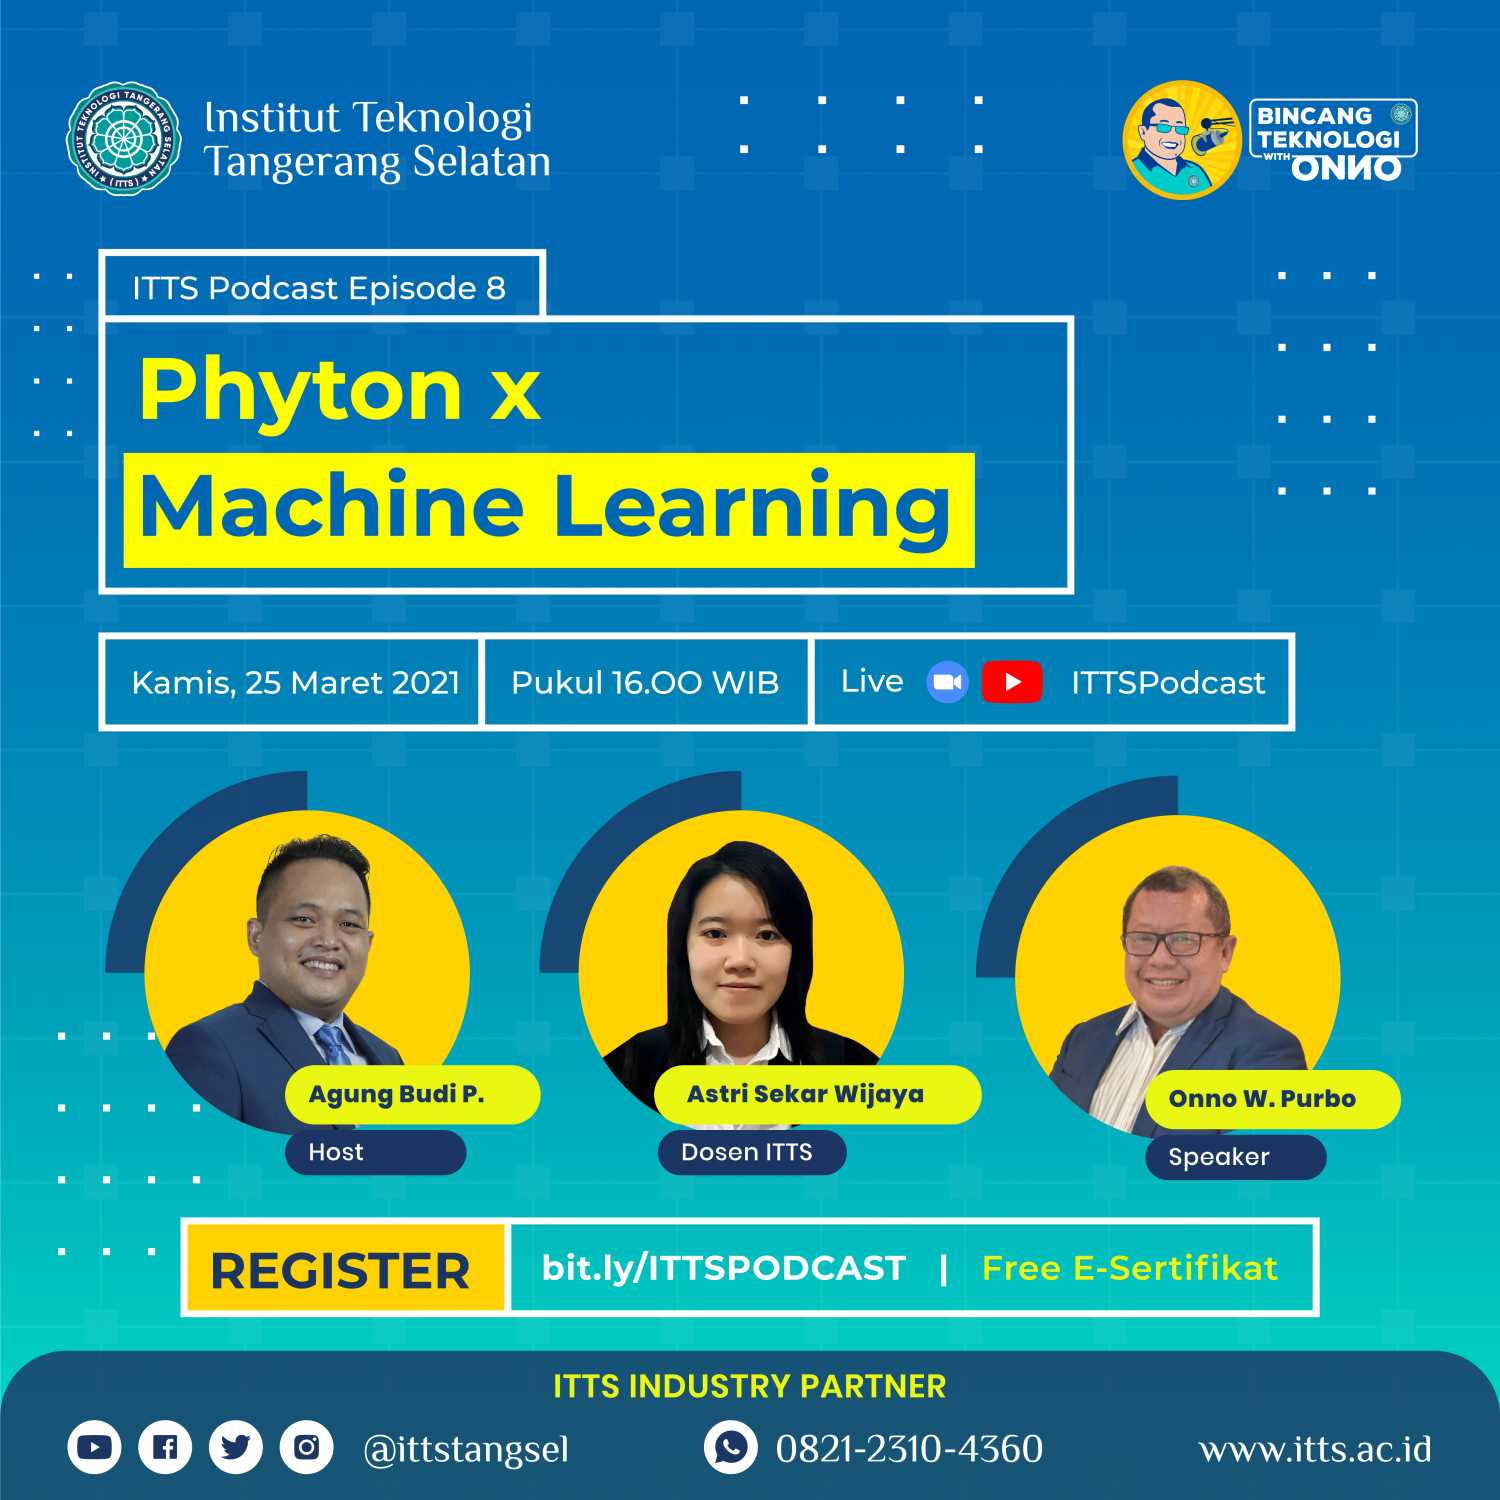 ITTSPODCAST Episode 8 - Phyton X Machine Learning